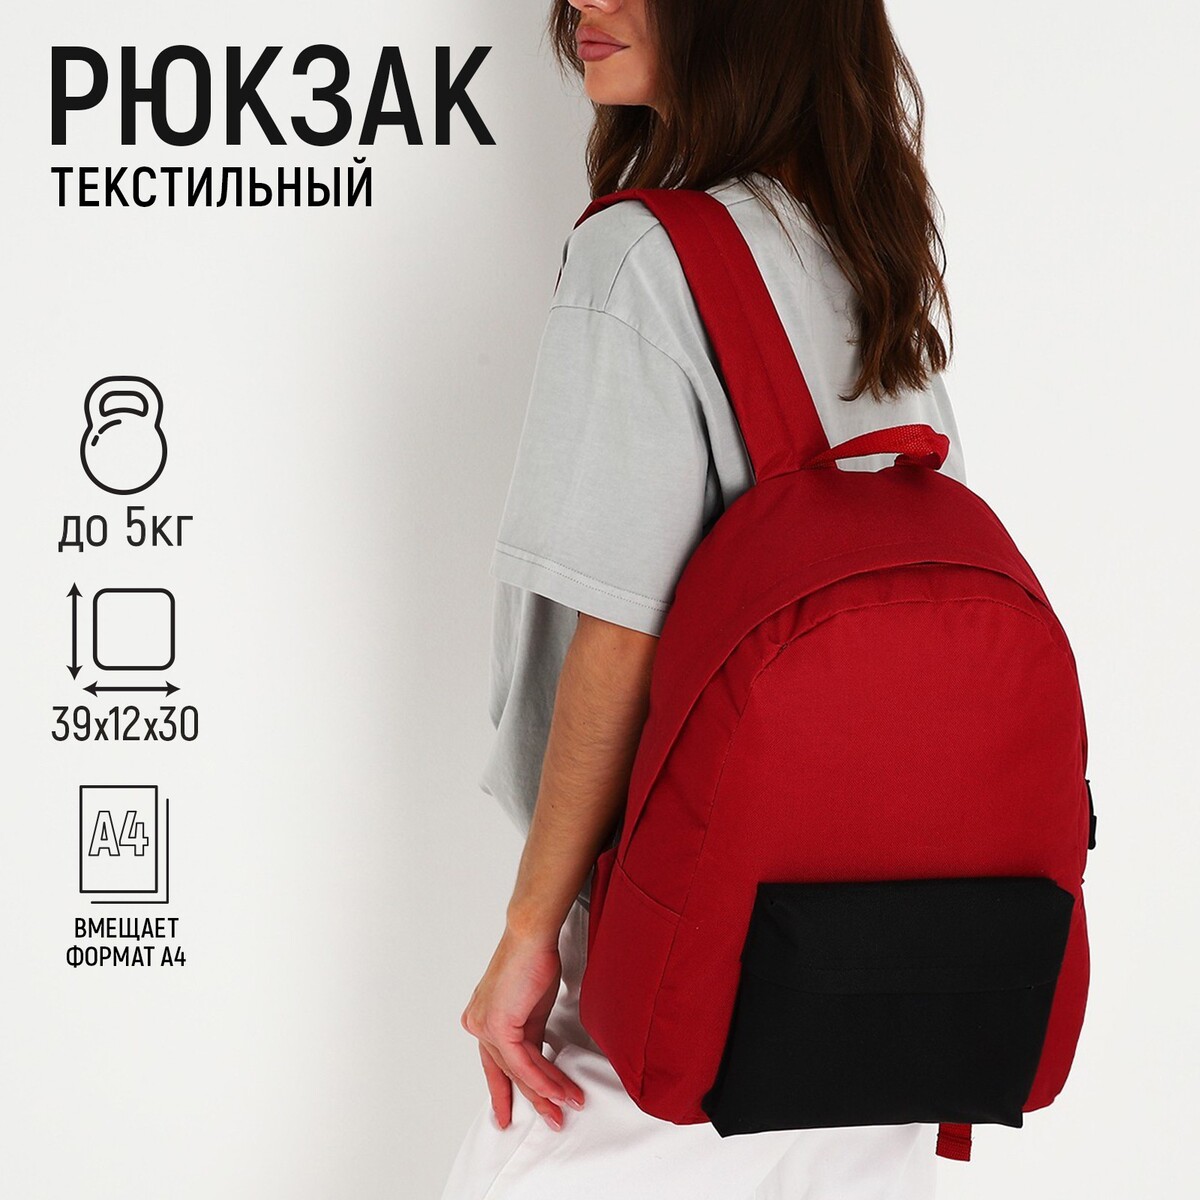 Рюкзак текстильный с цветным карманом, 30х39х12 см, бордовый/черный рюкзак женский городской textura бордовый